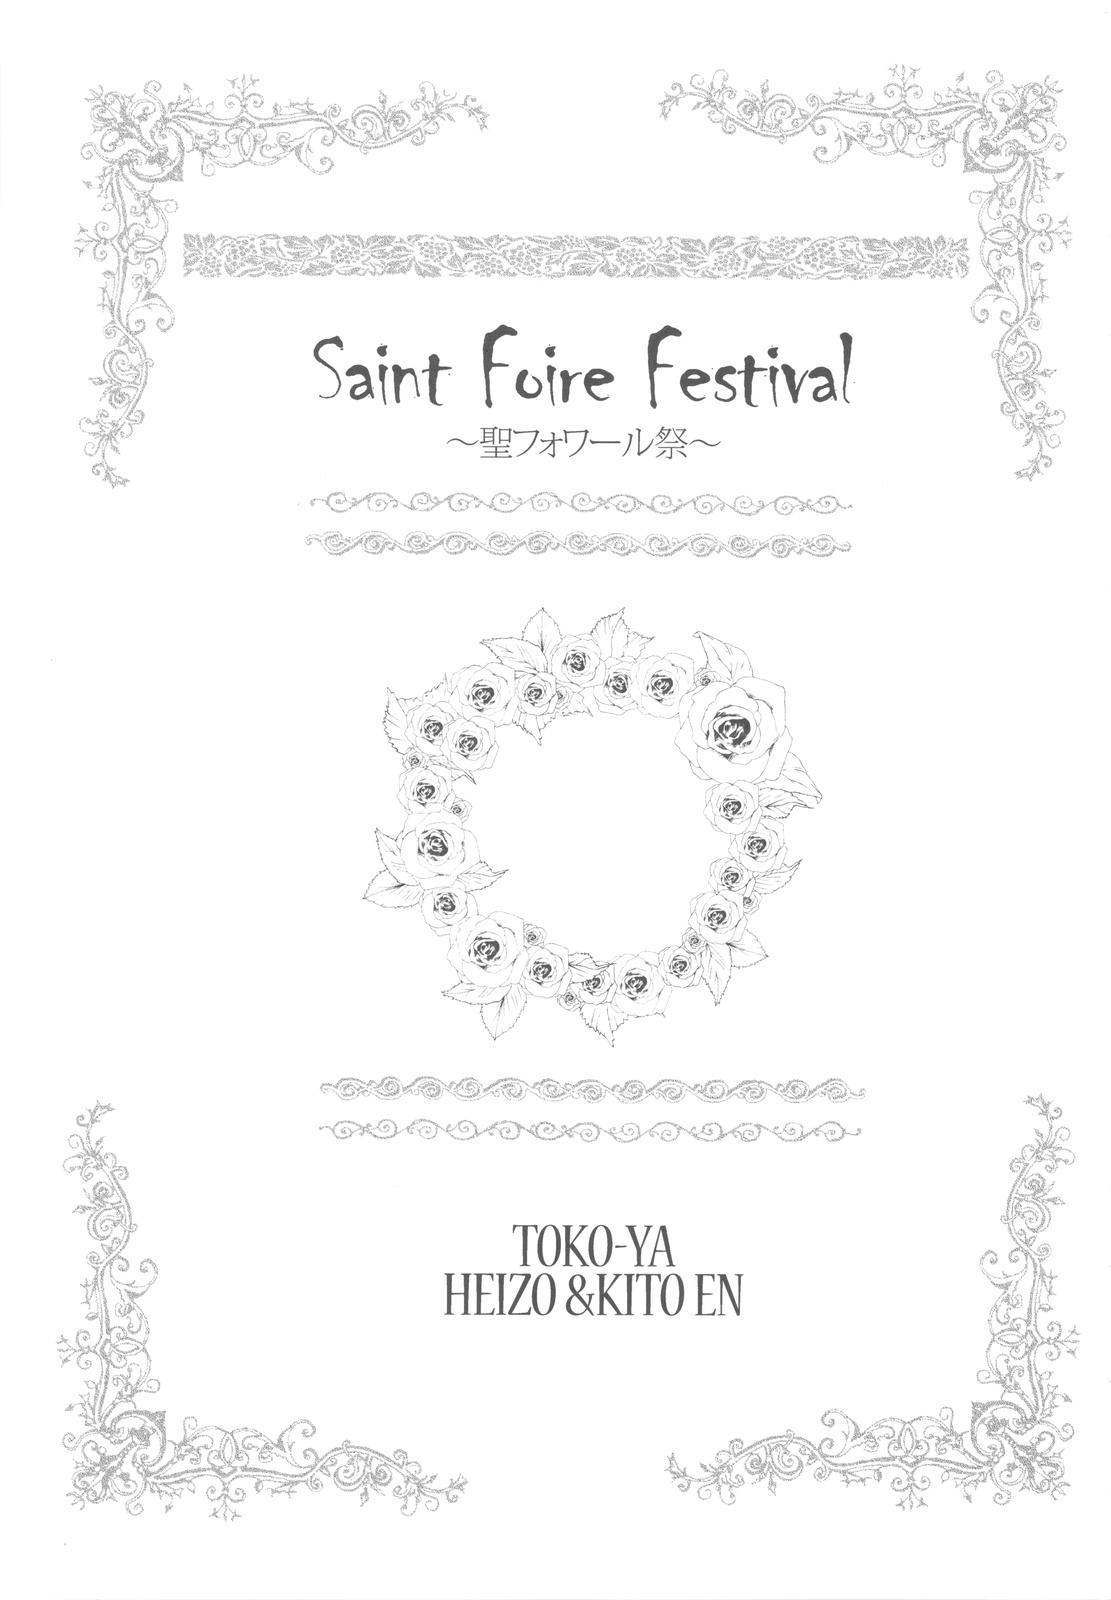 Saint Foire Festival 2